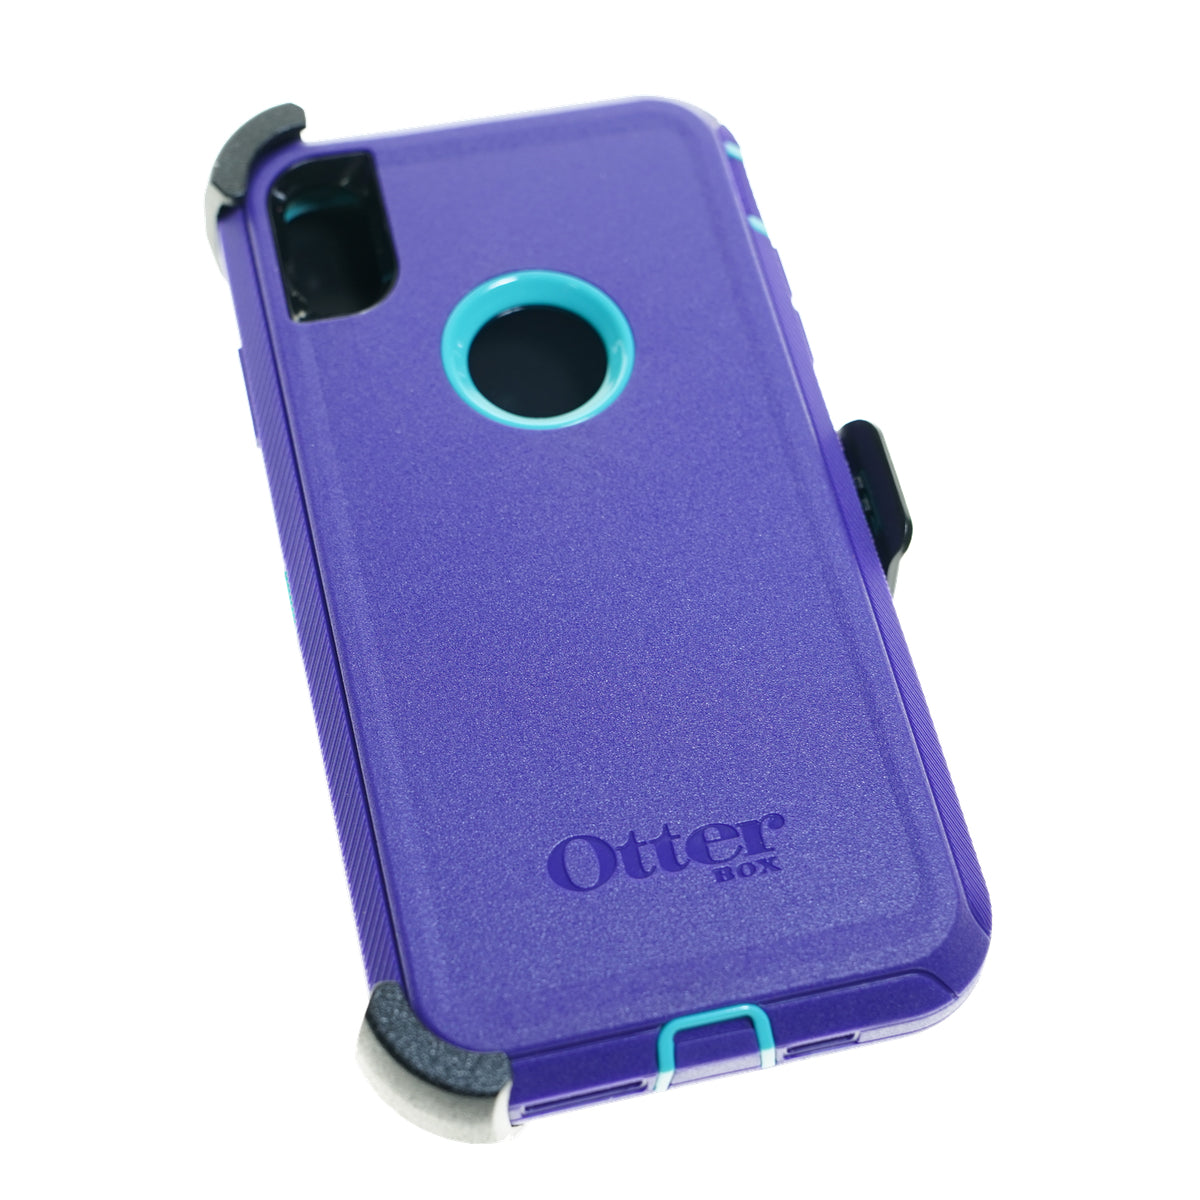 Estuche otterbox defender iphone xmax (6.5) color morado / menta